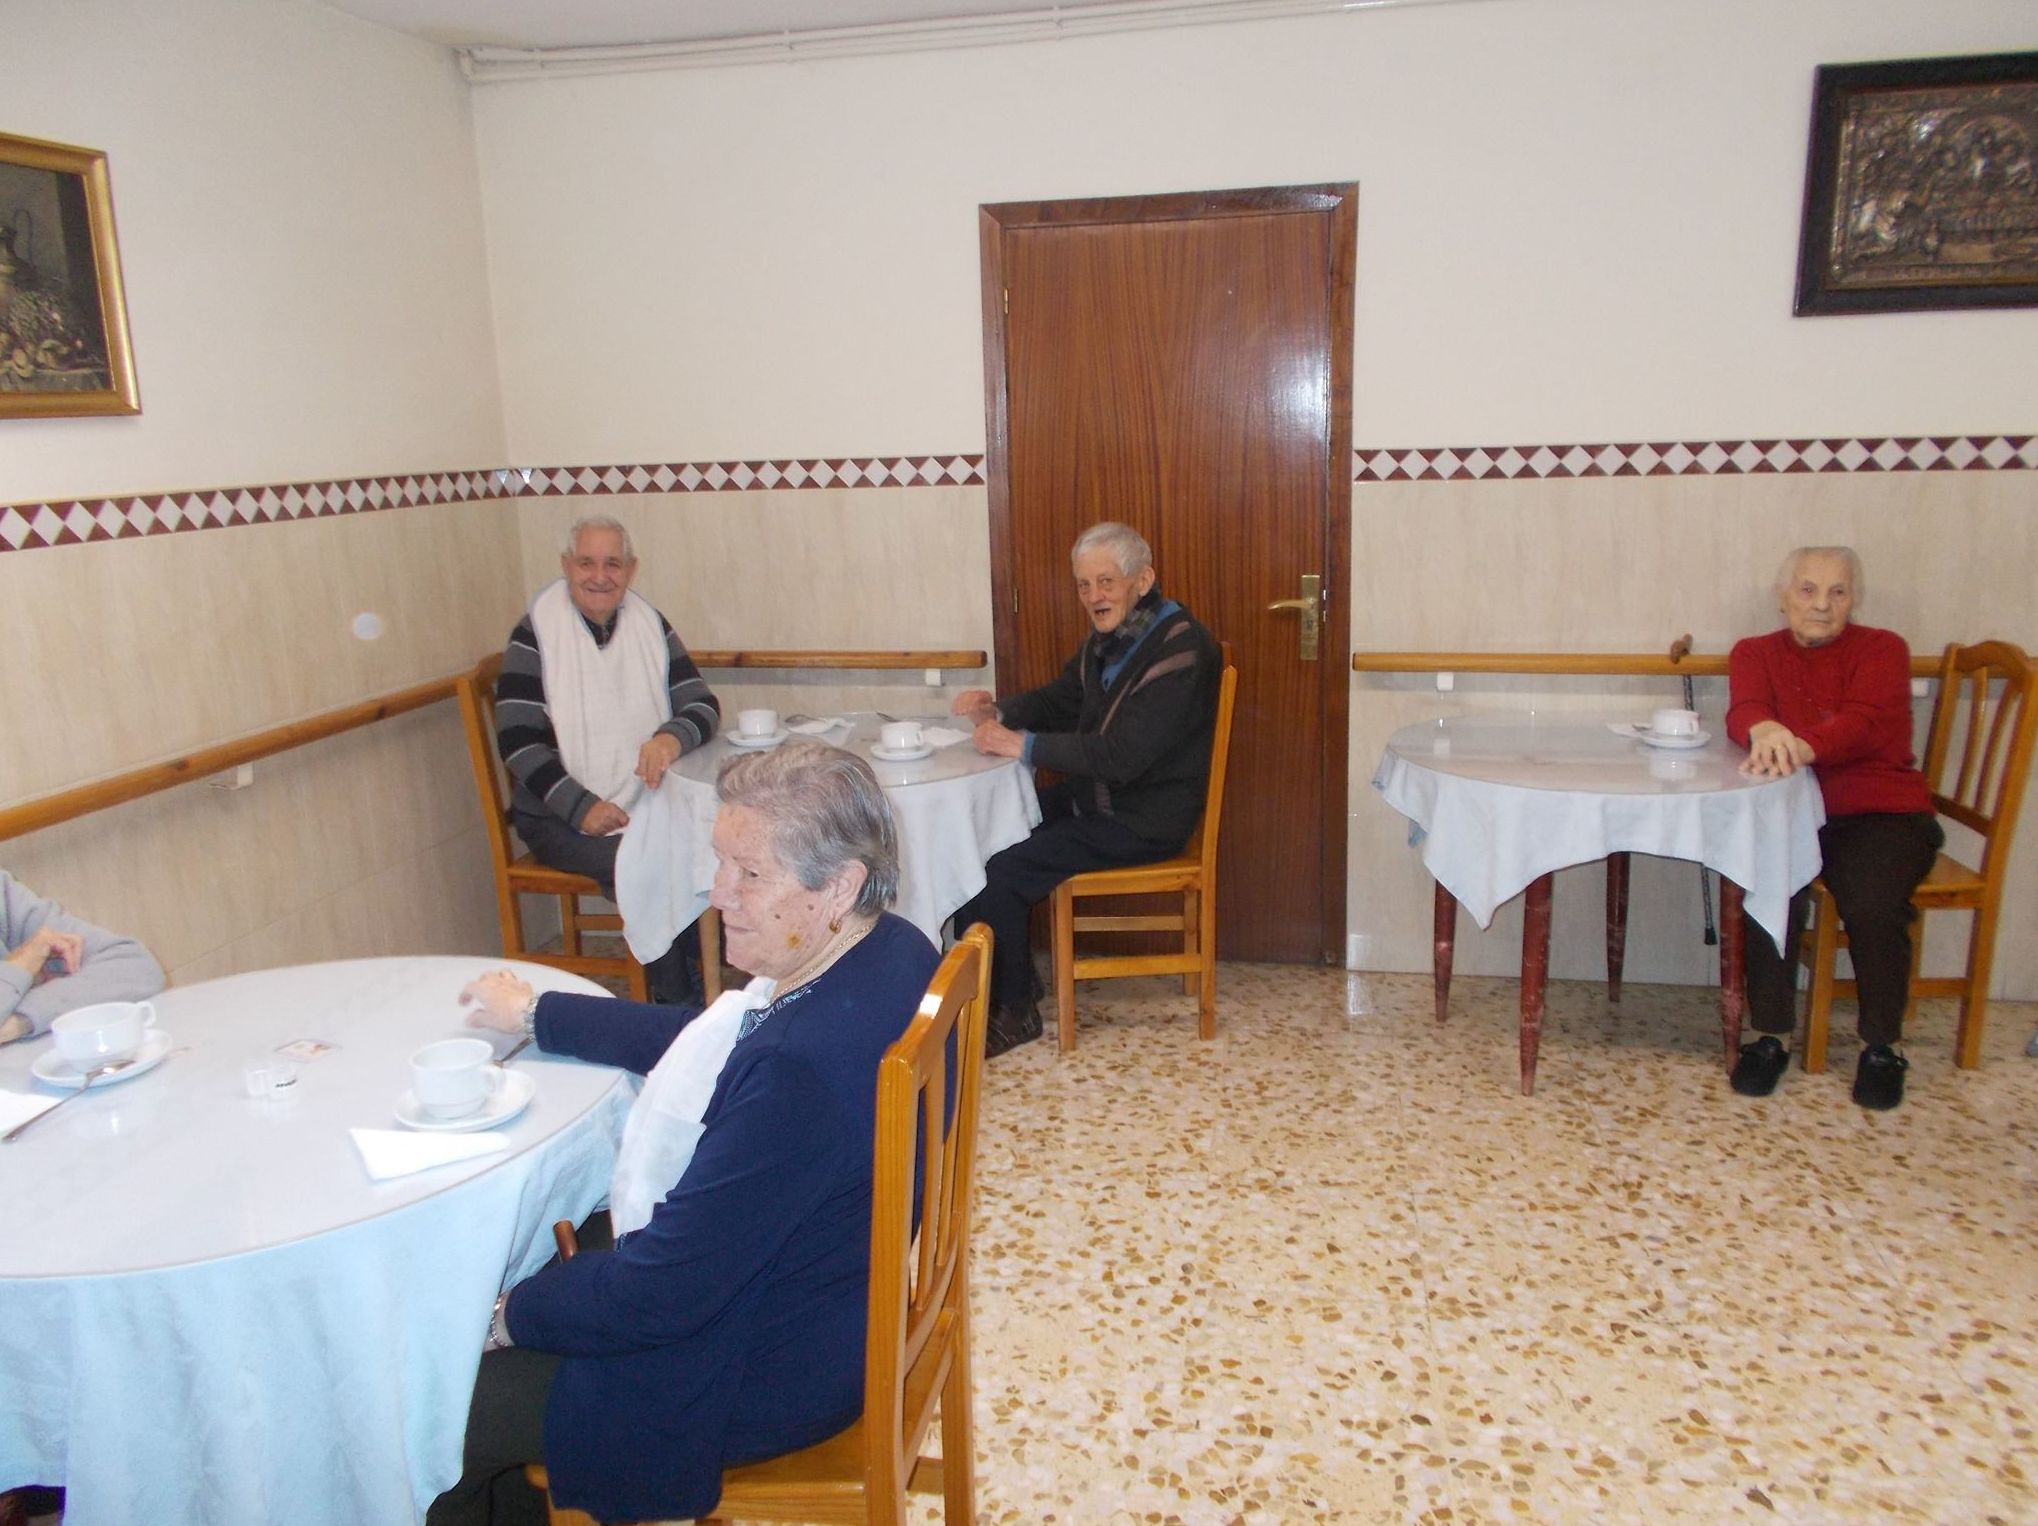 Foto 8 de Residencias geriátricas en  | Hospital San Juan Bautista de Astorga